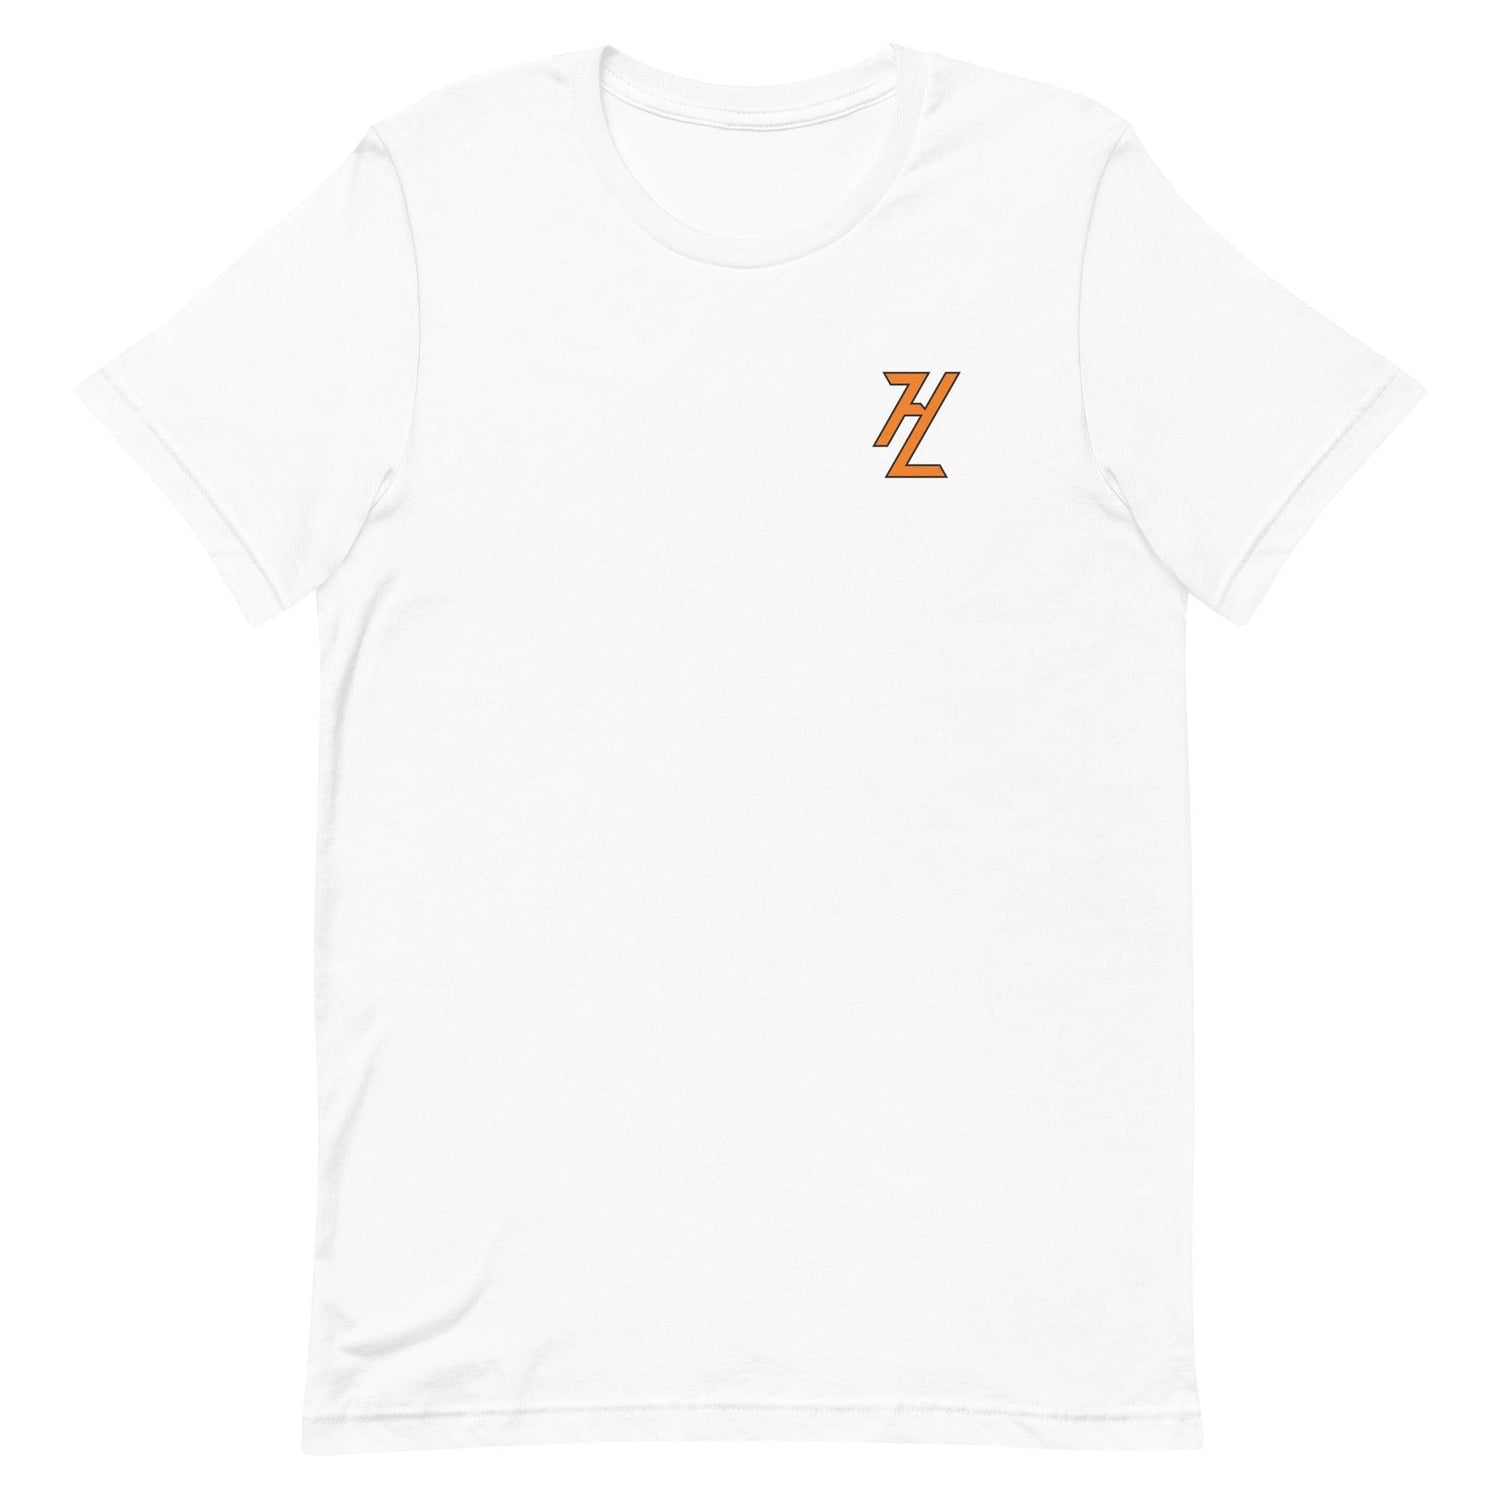 Hunter Loyd "Essential" t-shirt - Fan Arch